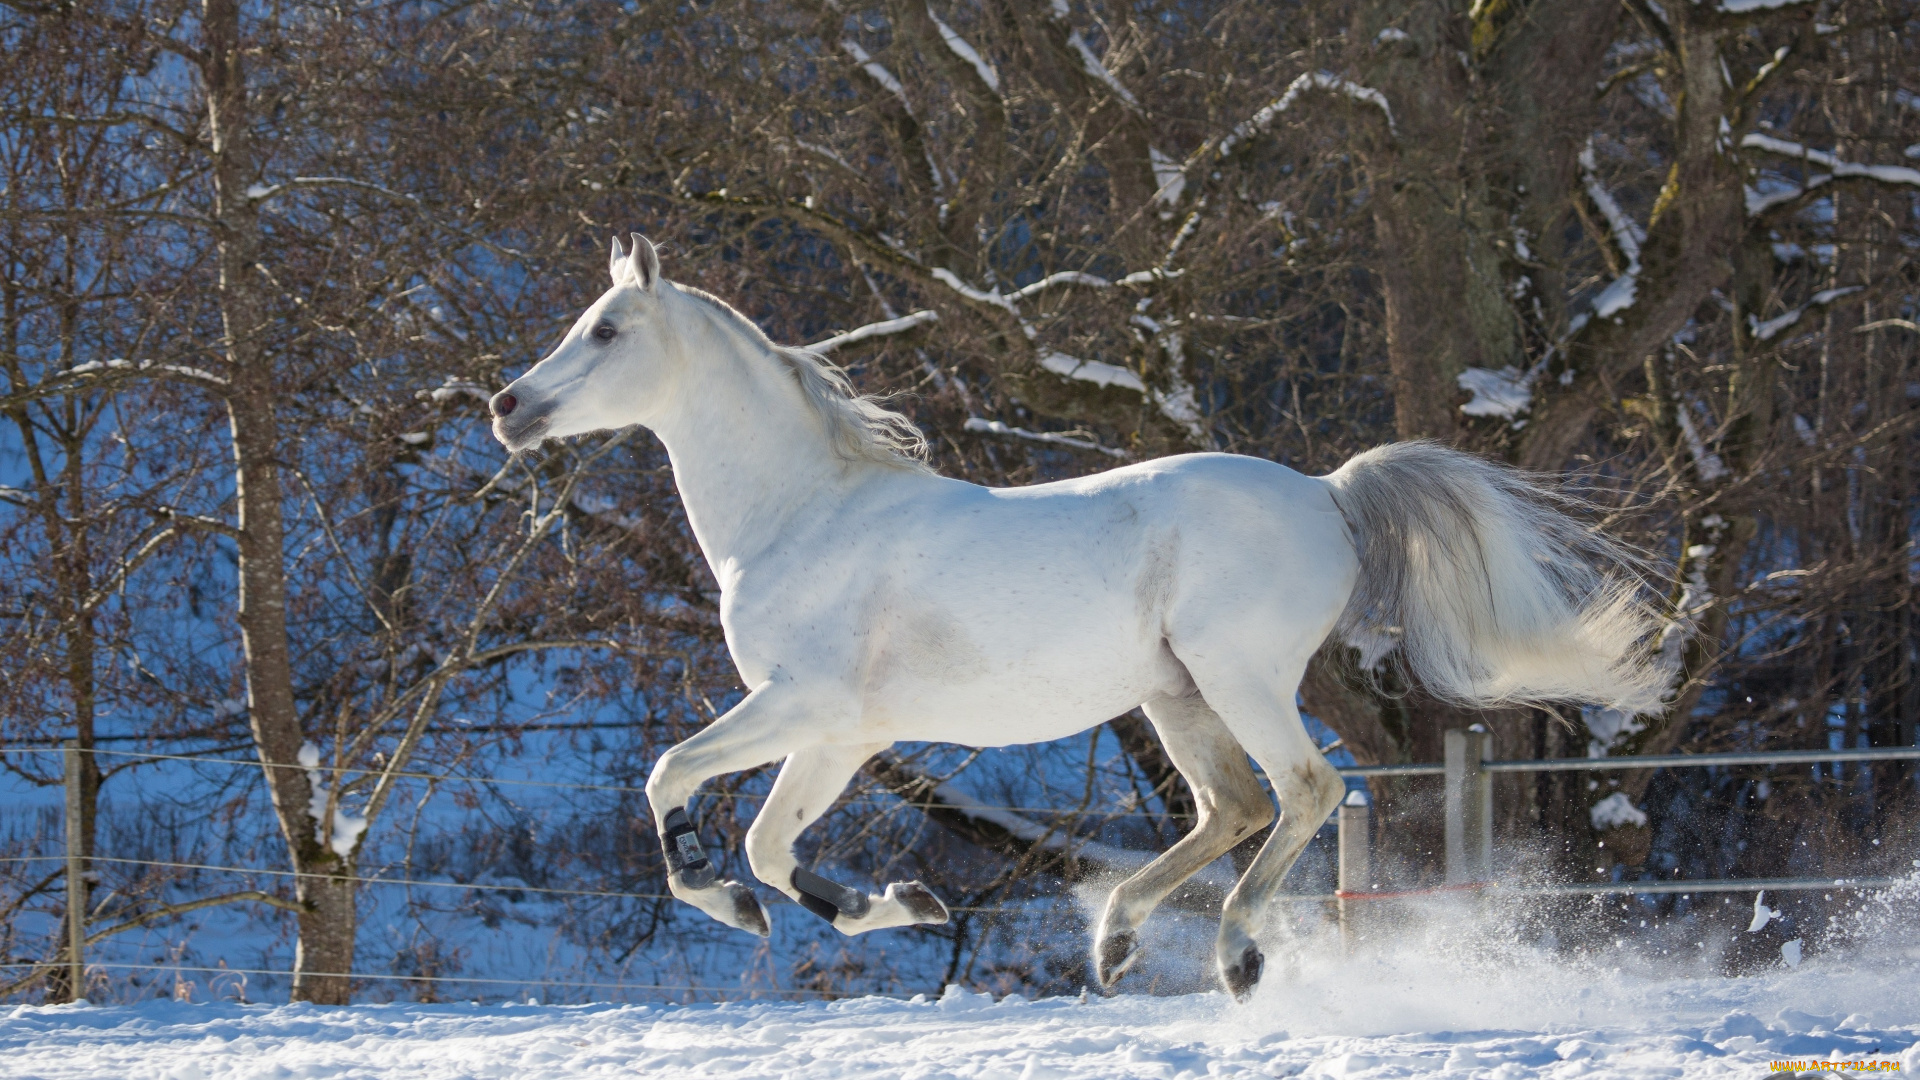 автор, , oliverseitz, животные, лошади, конь, белый, галоп, бег, движение, грация, мощь, зима, снег, загон